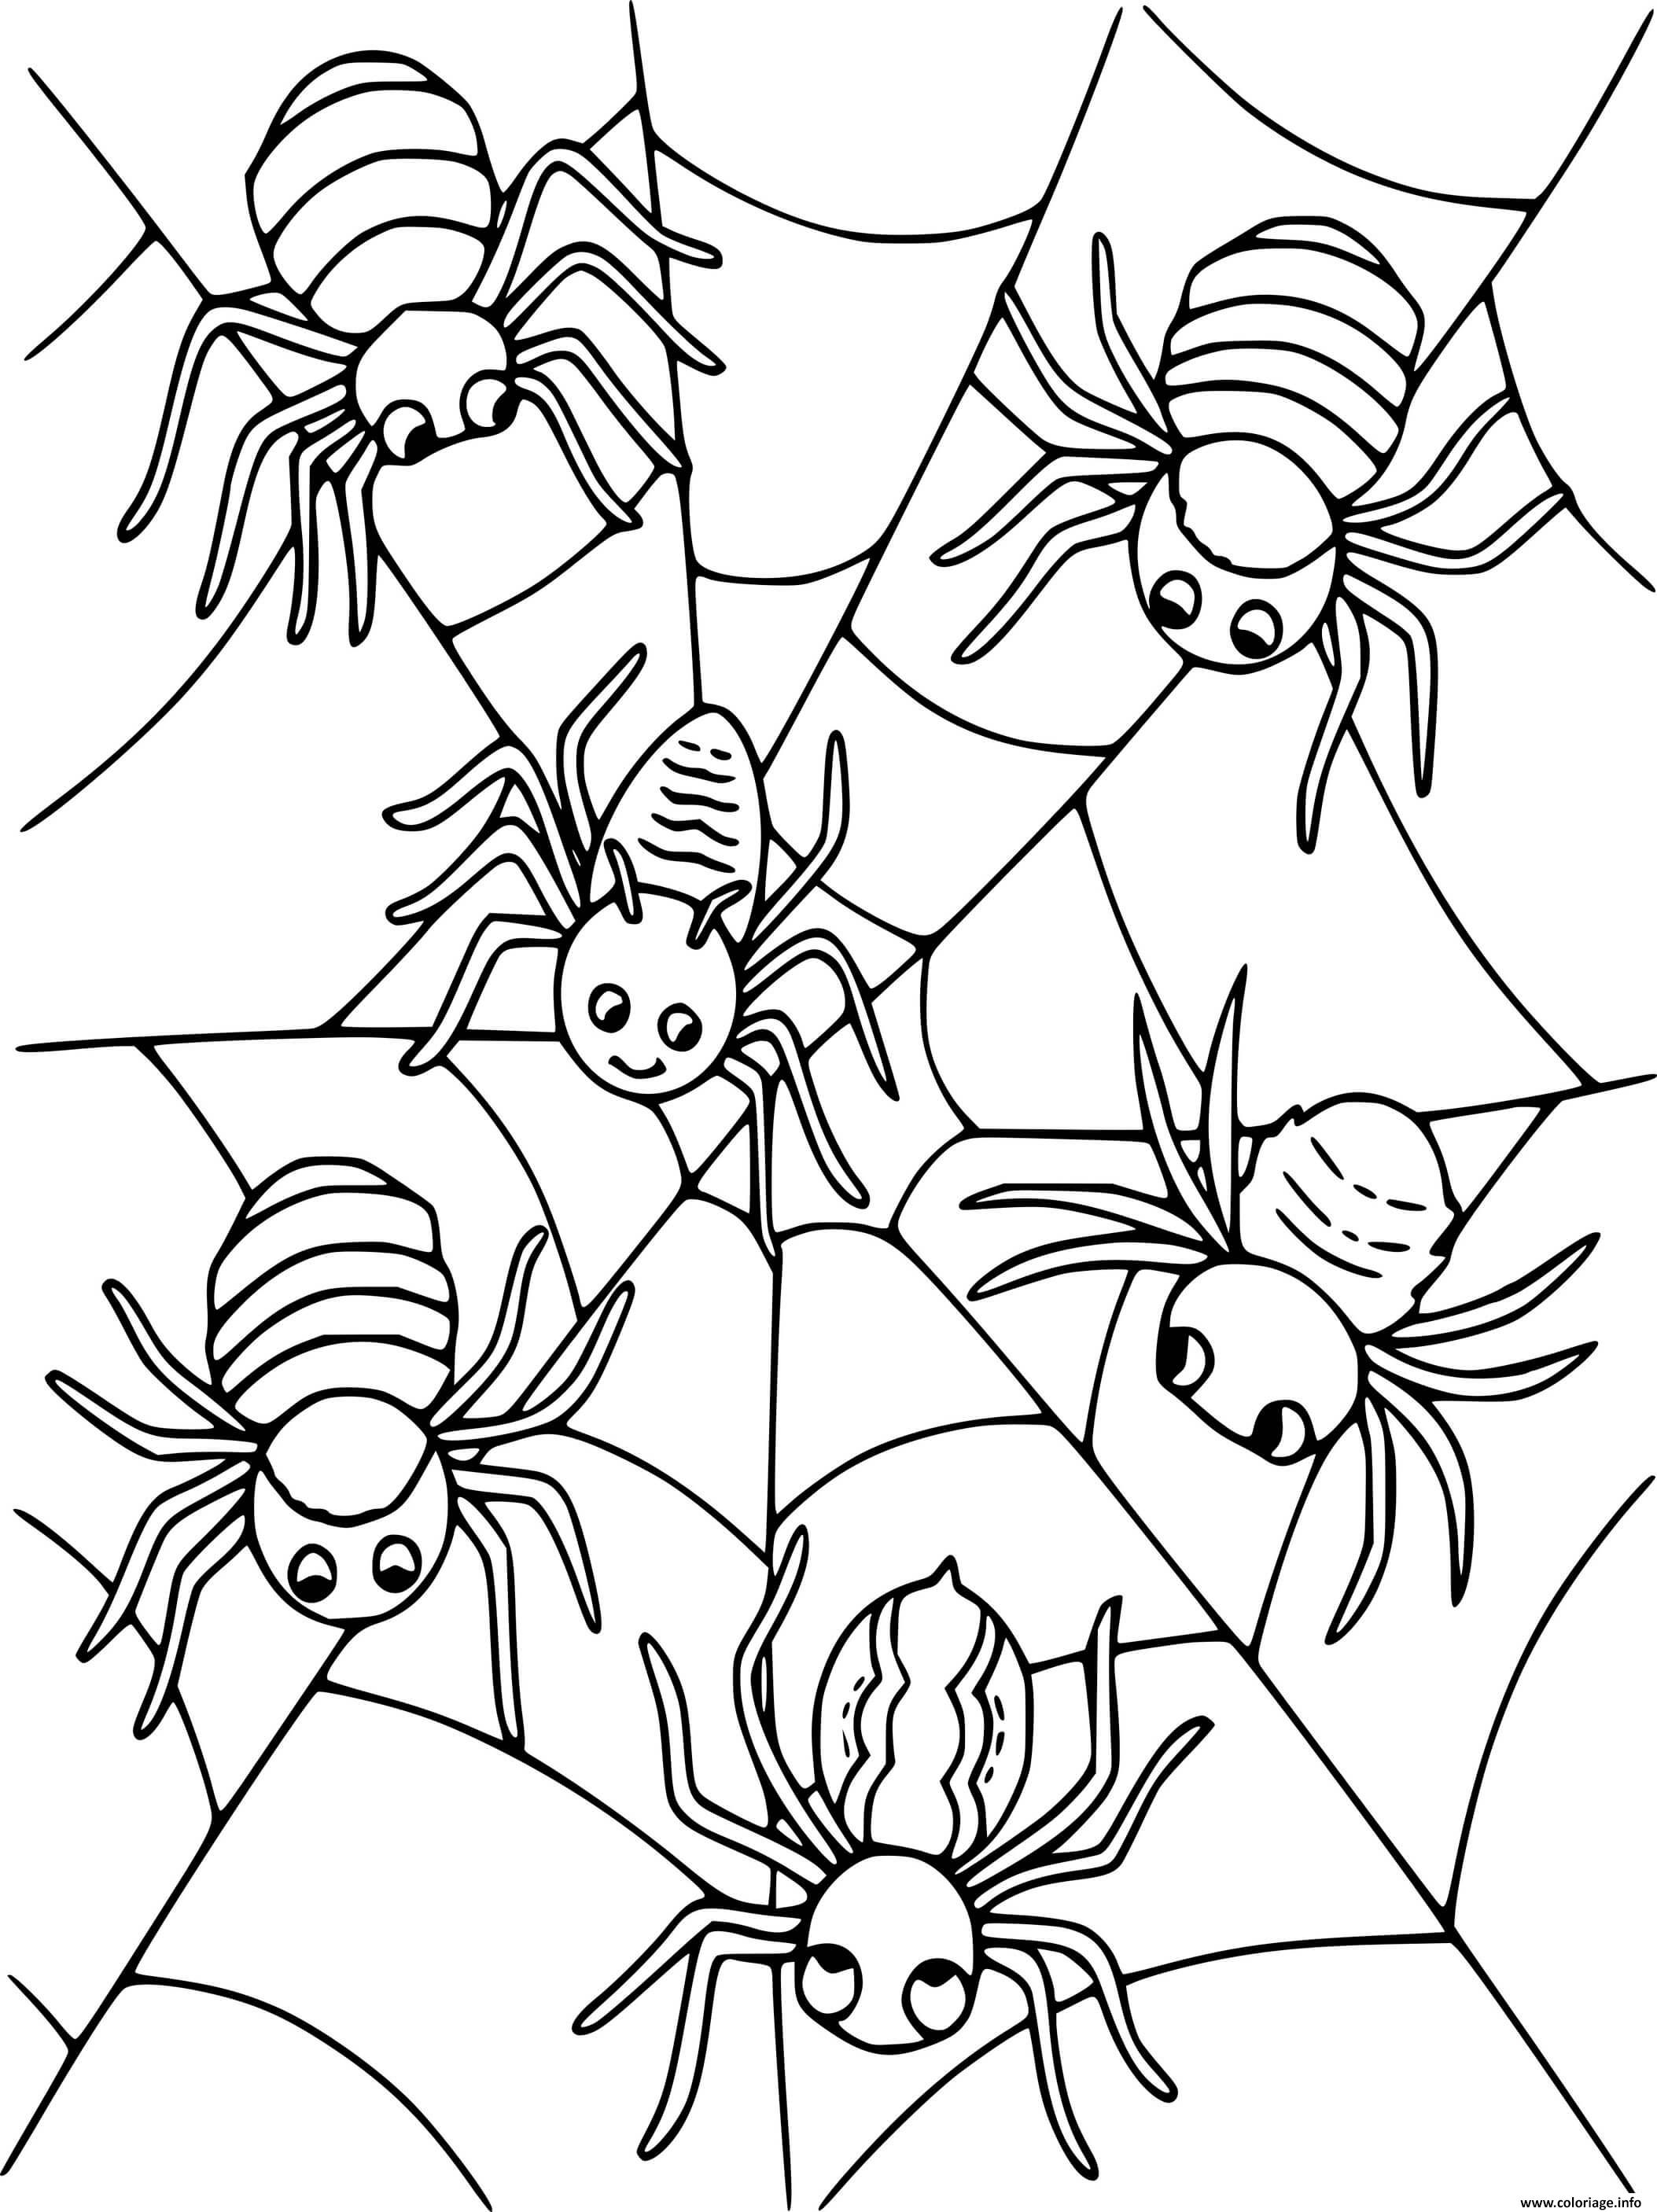 Dessin Six araignees Coloriage Gratuit à Imprimer